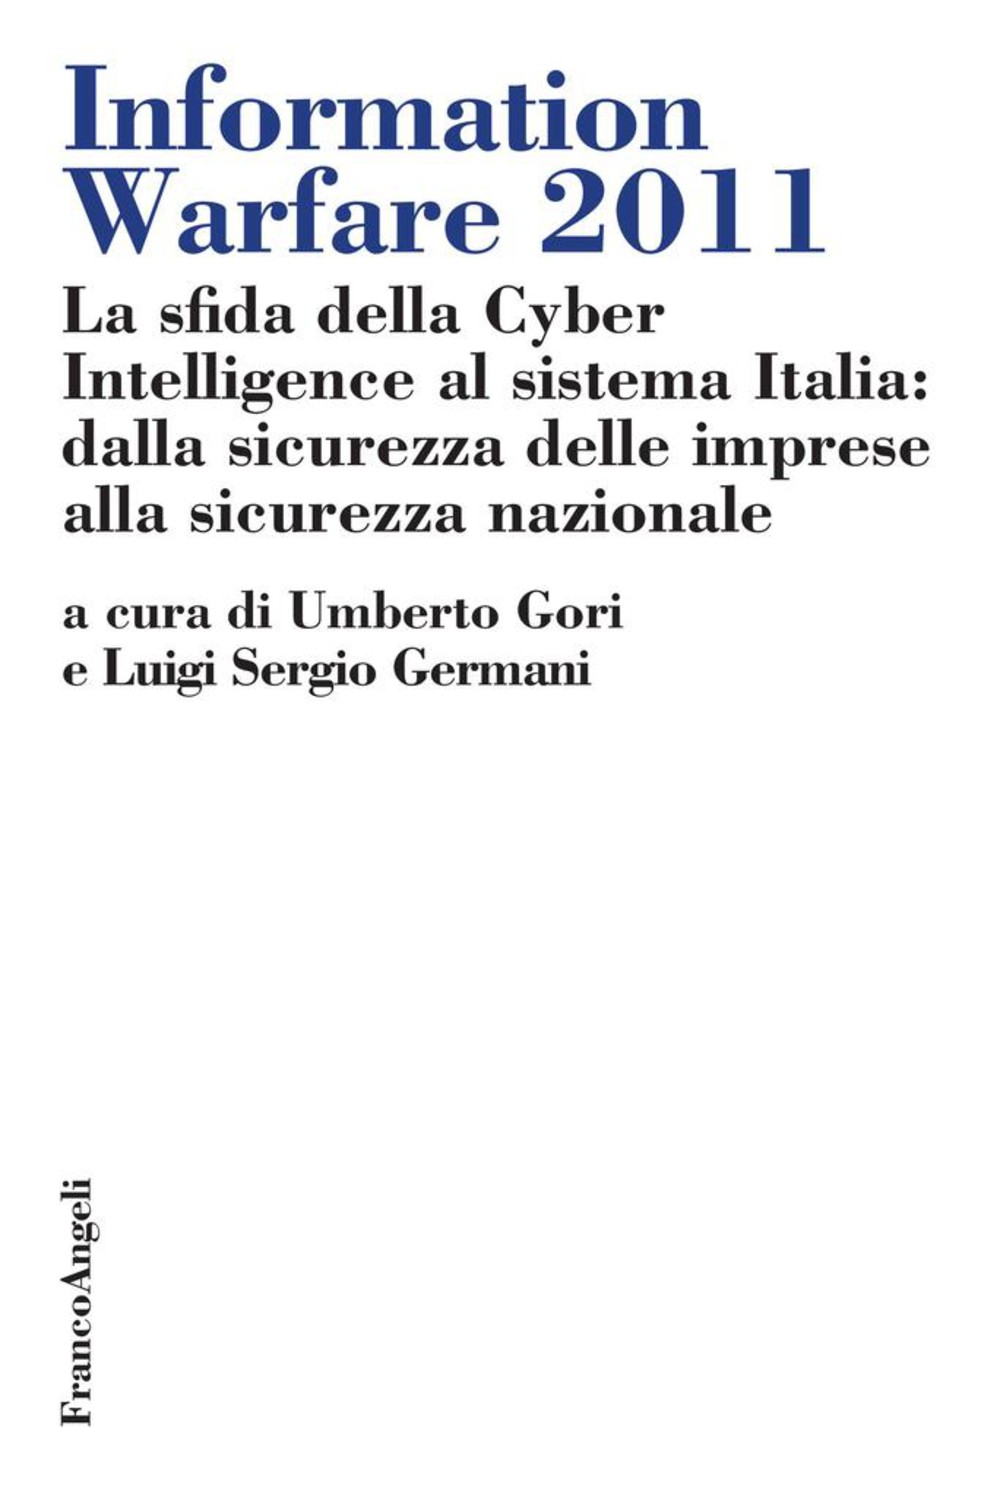 Information Warfare 2011. La sfida della Cyber Intelligence al sistema Italia: dalla sicurezza delle imprese alla sicurezza nazionale - Librerie.coop